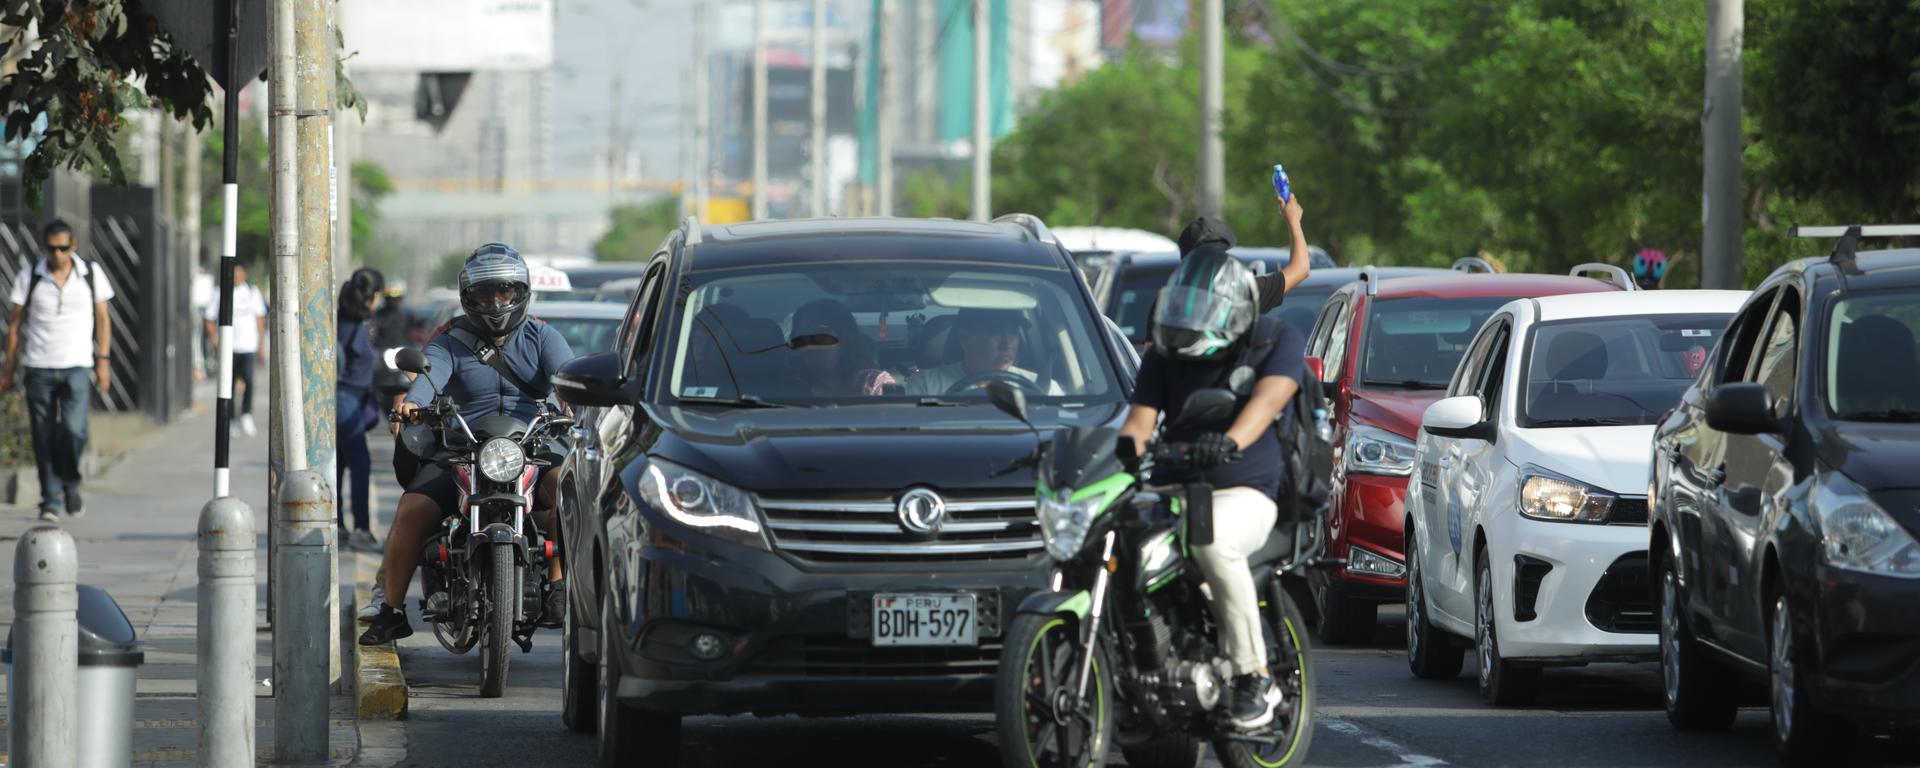 El caos sobre dos ruedas: motociclistas se convierten en un riesgo latente al infringir constantemente las reglas de tránsito